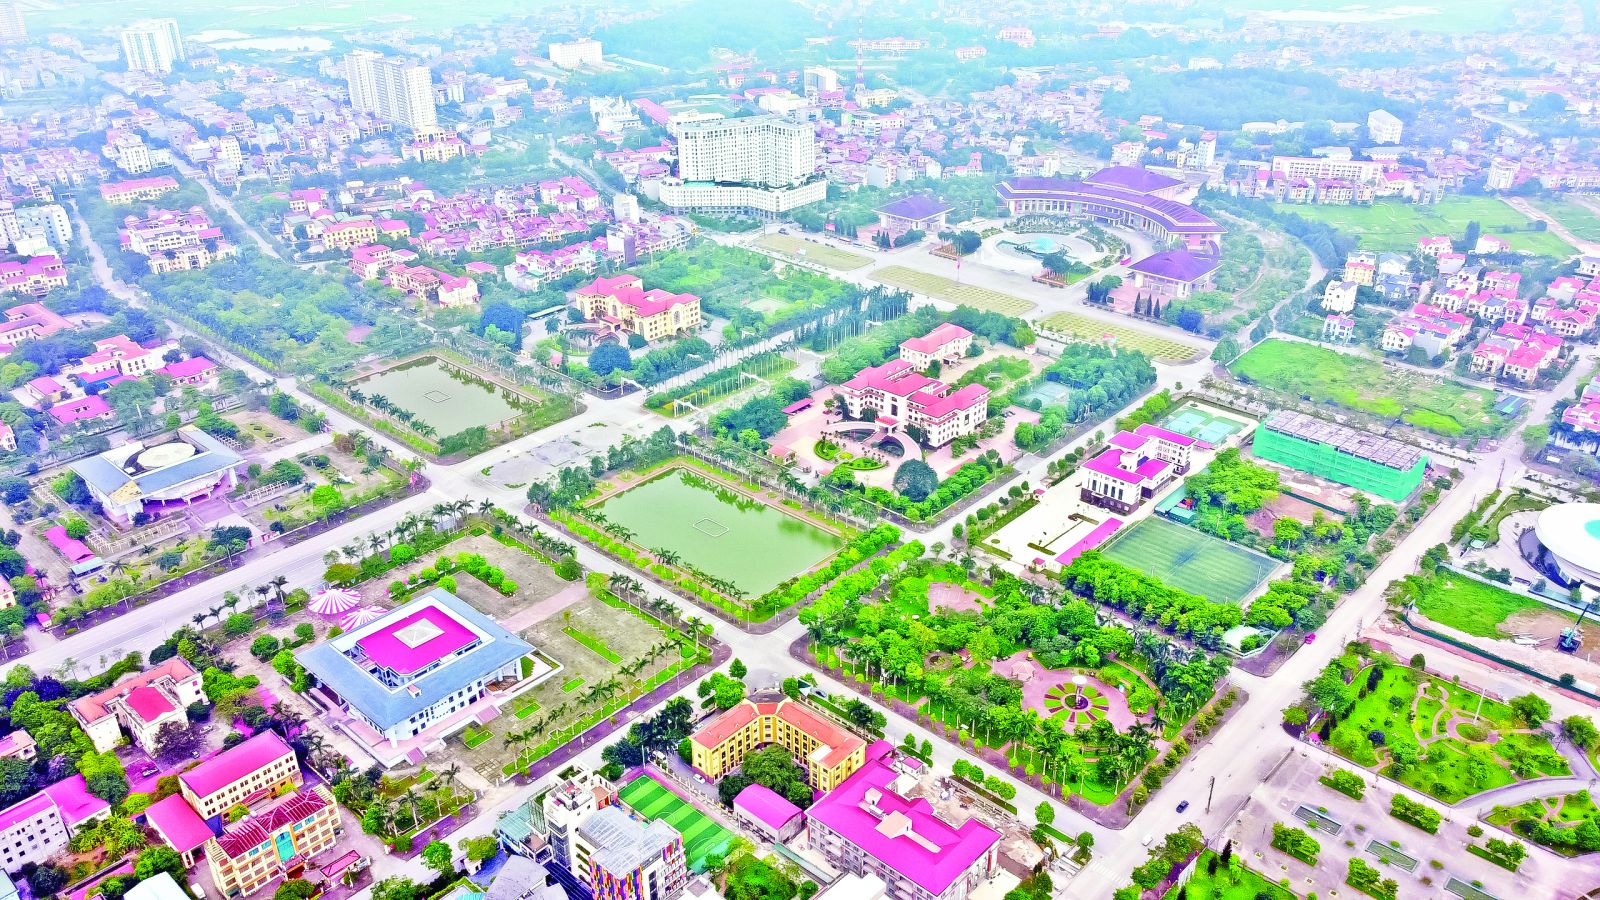  Đô thị Bắc Ninh đang có tốc độ phát triển mạnh mẽ